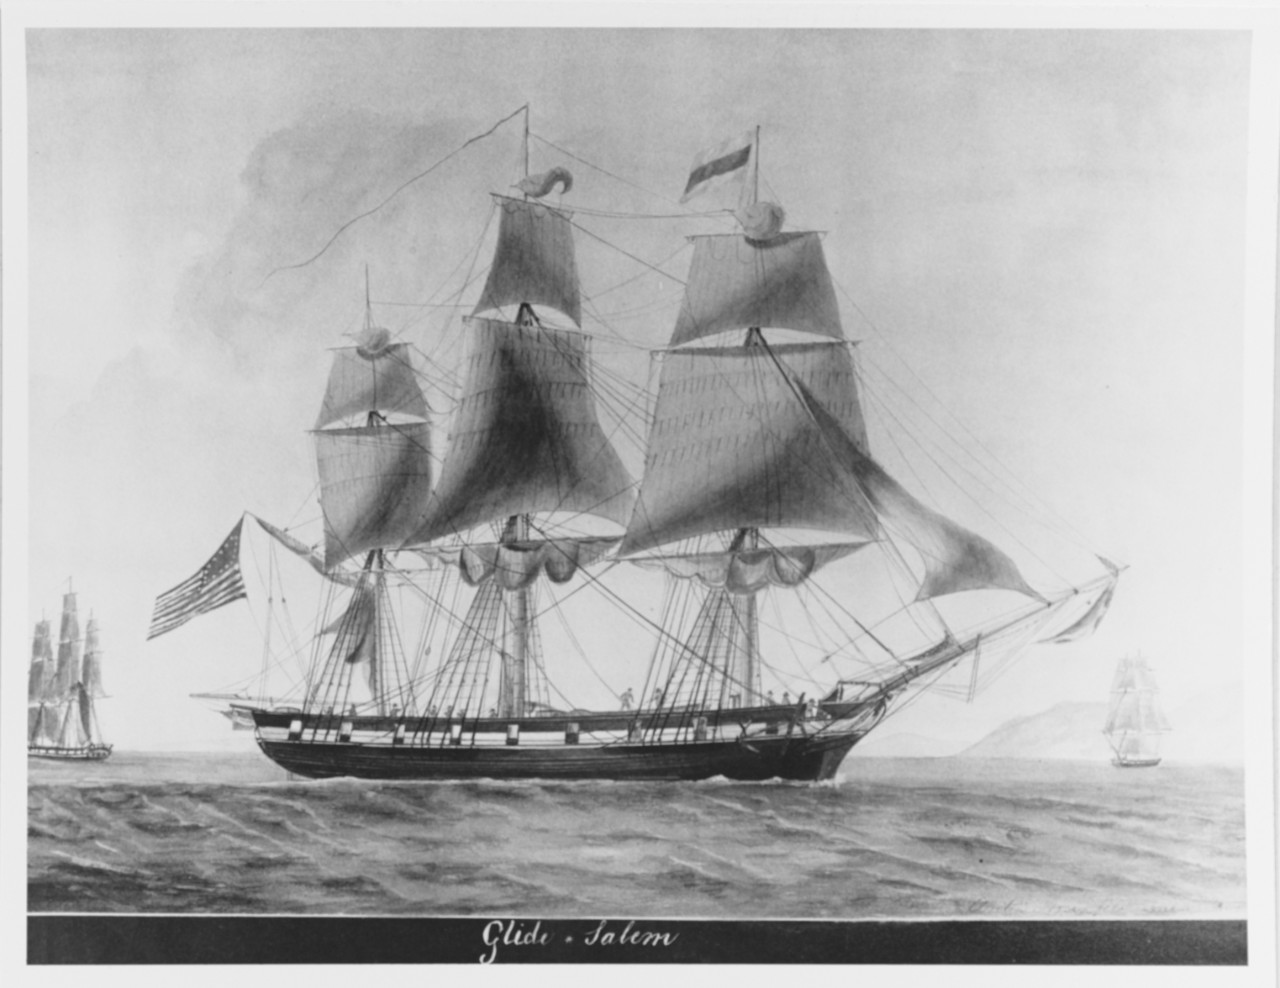 Ship GLIDE of Salem, Massachusetts